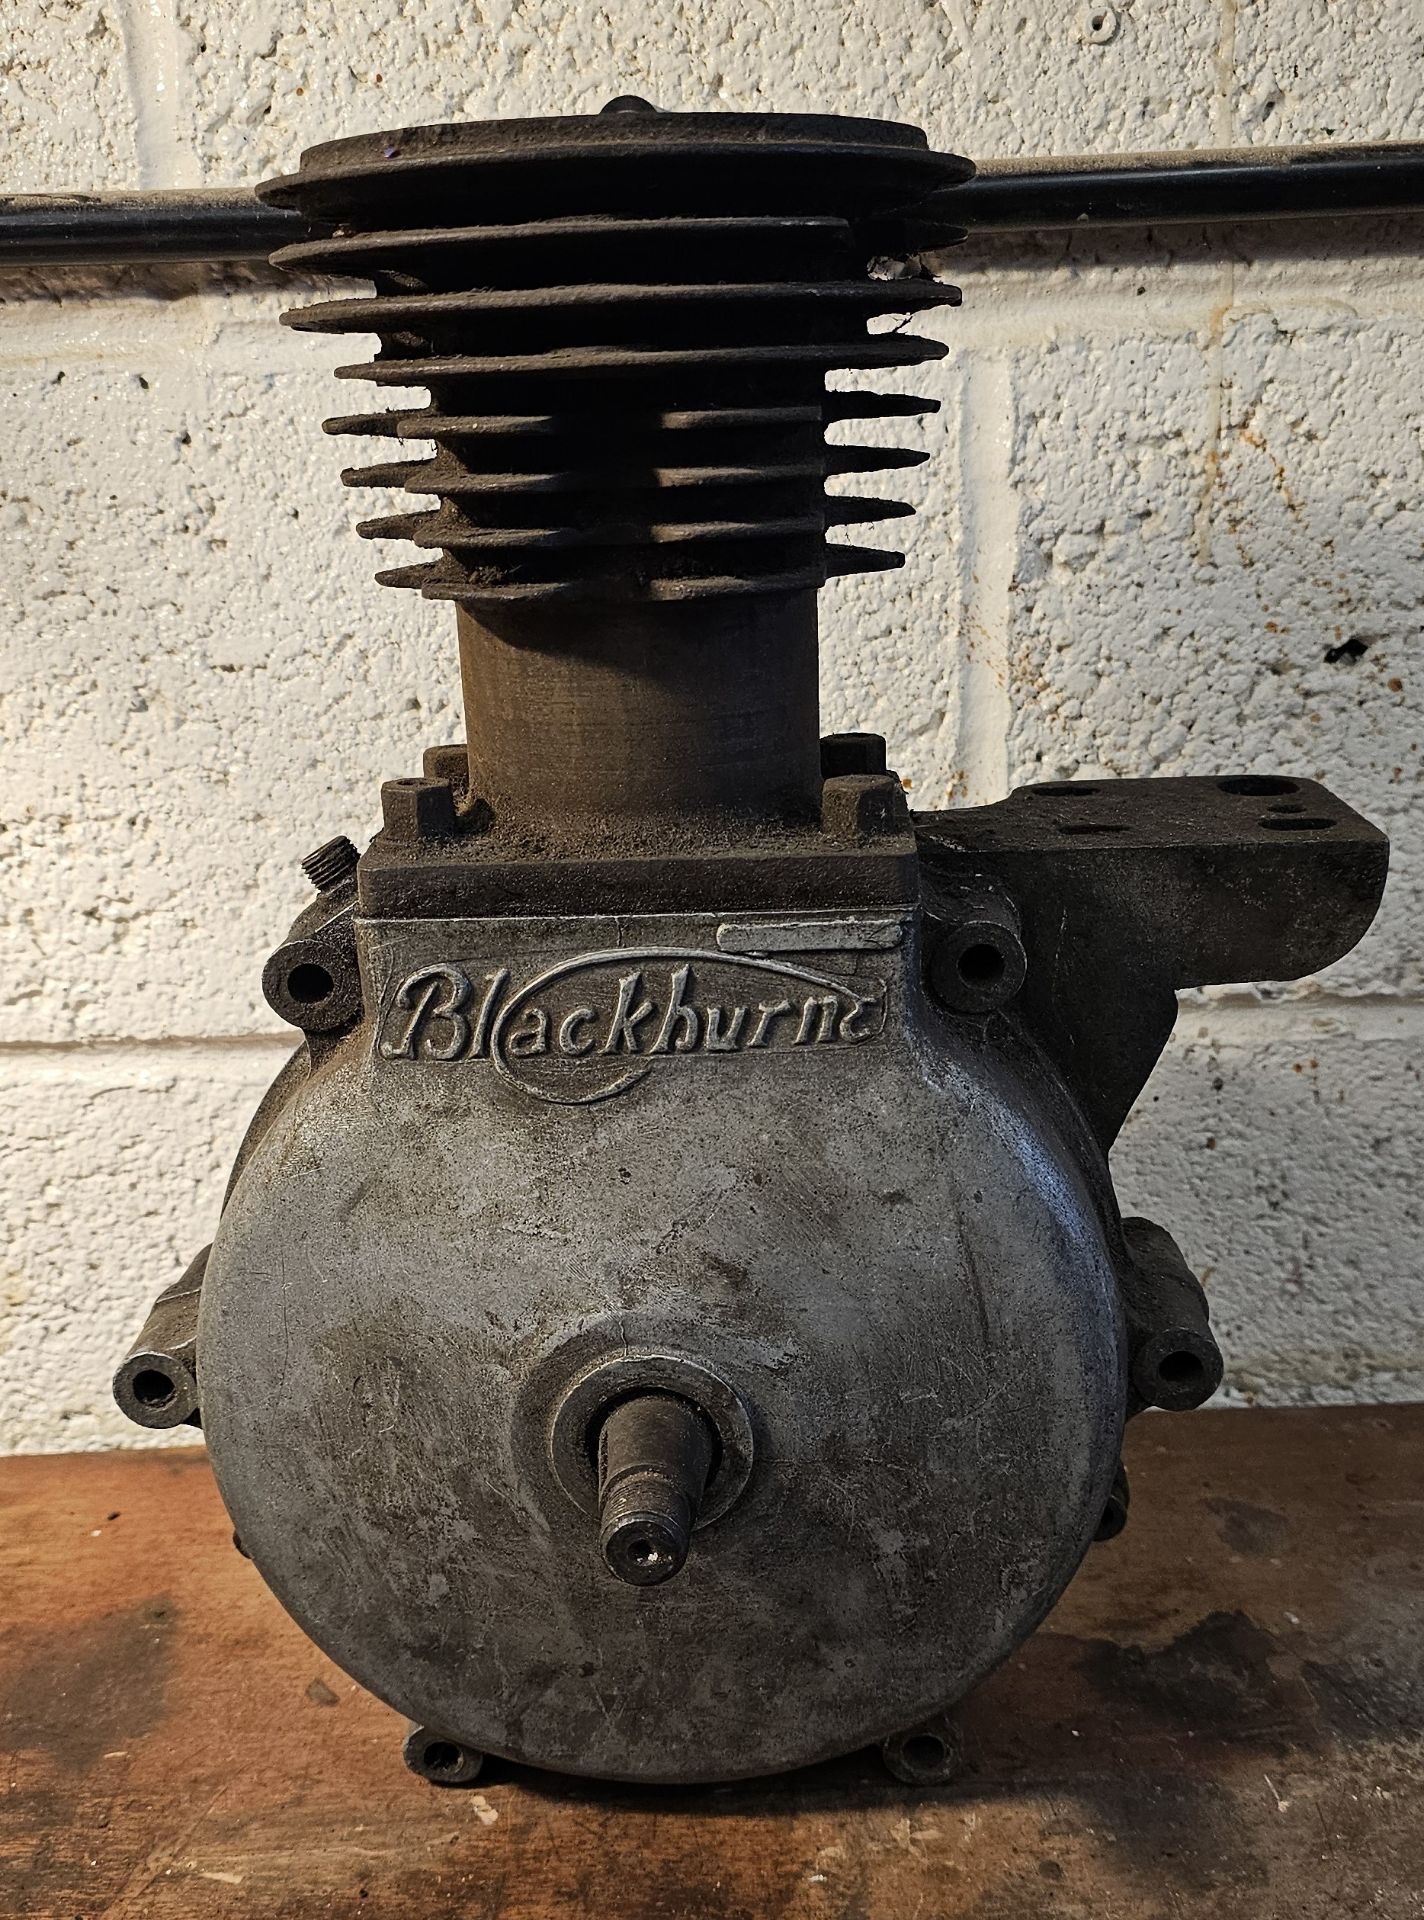 A vintage Blackburne engine, no number.